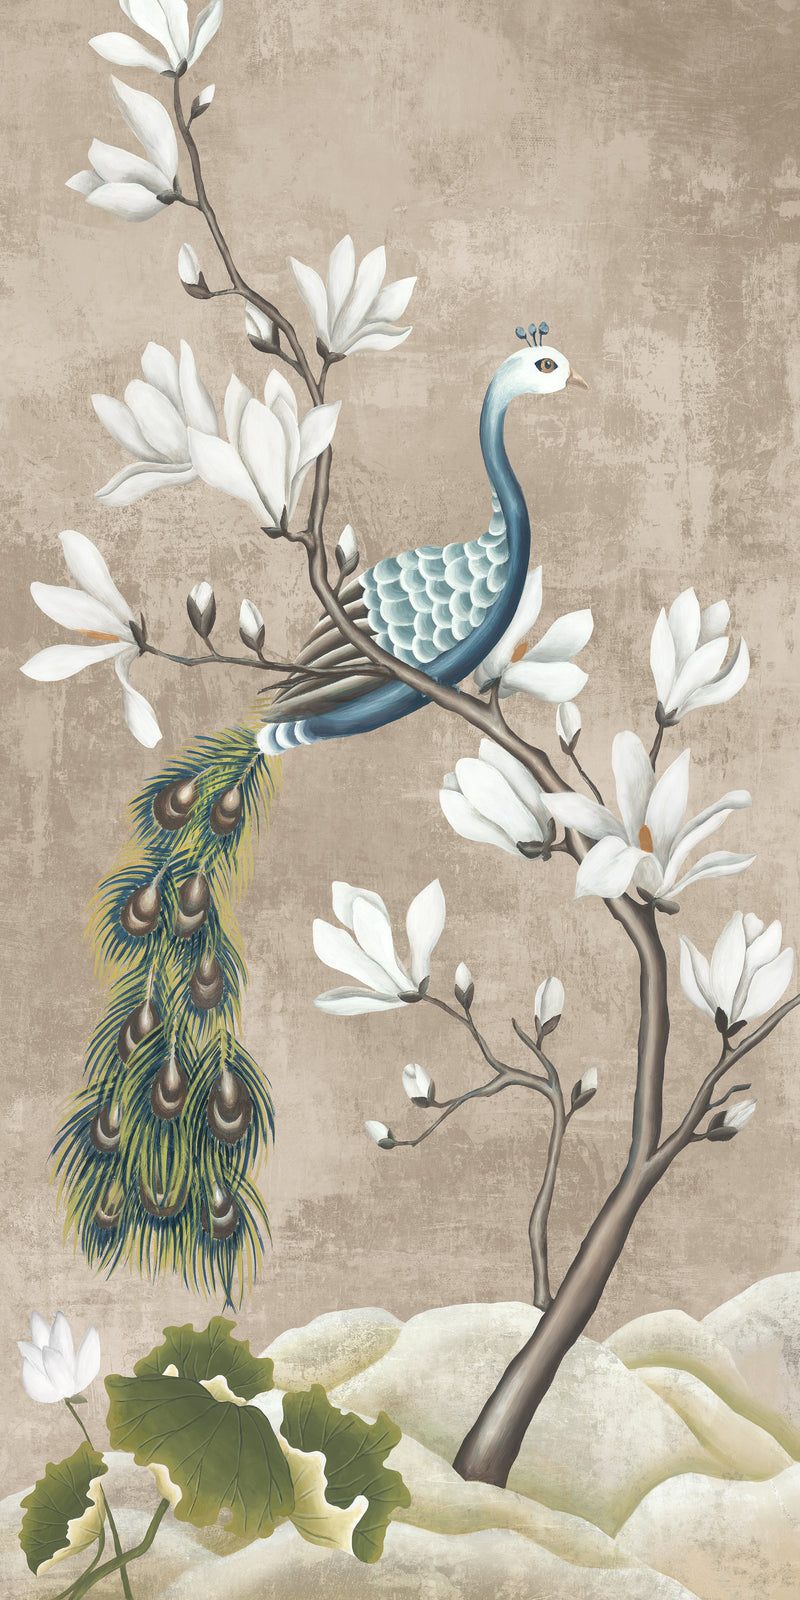 Birds with Magnolias I by shopbarclaybutera